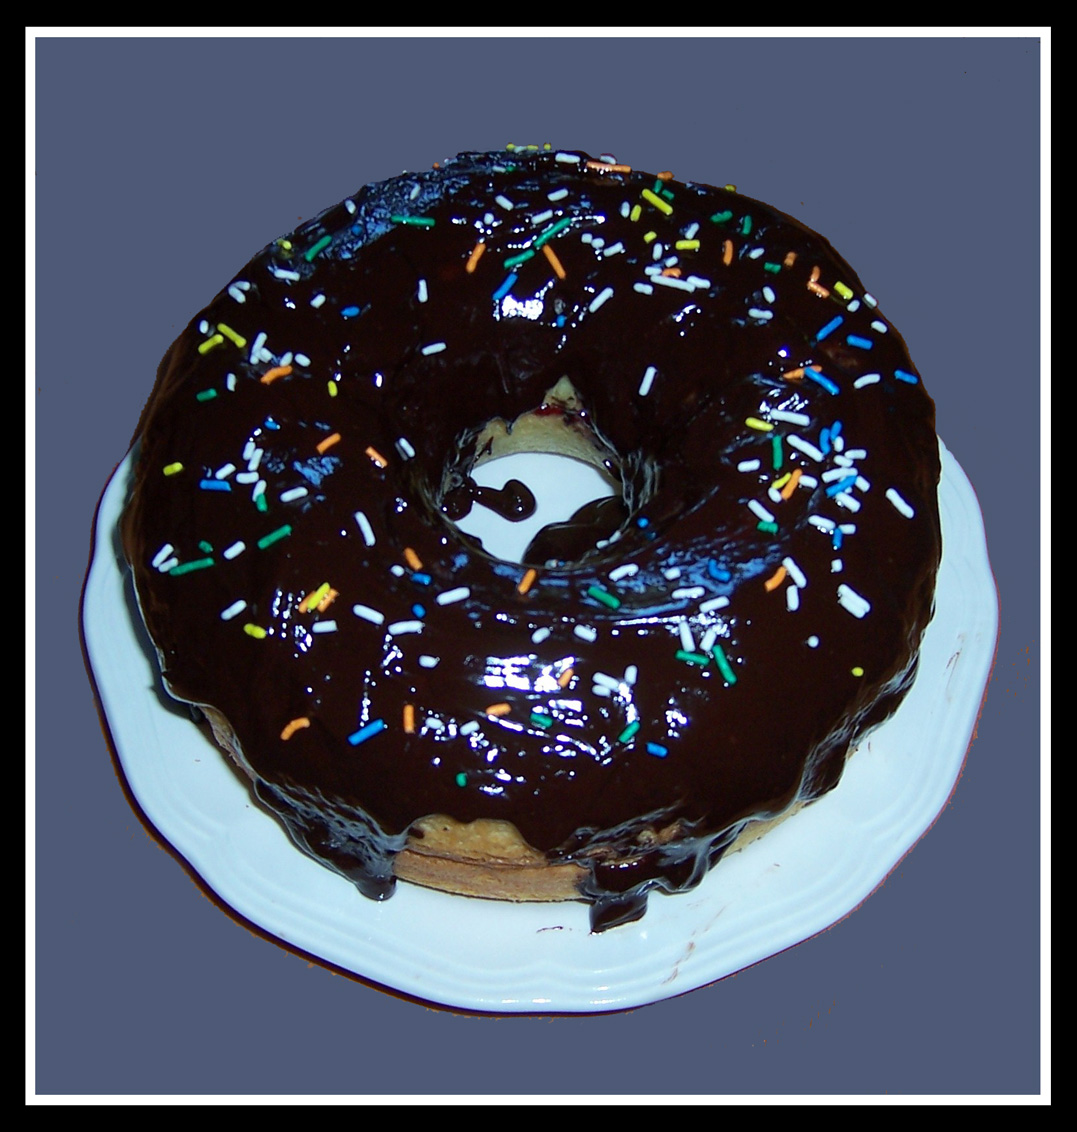 Giant ten inch ring donut cake